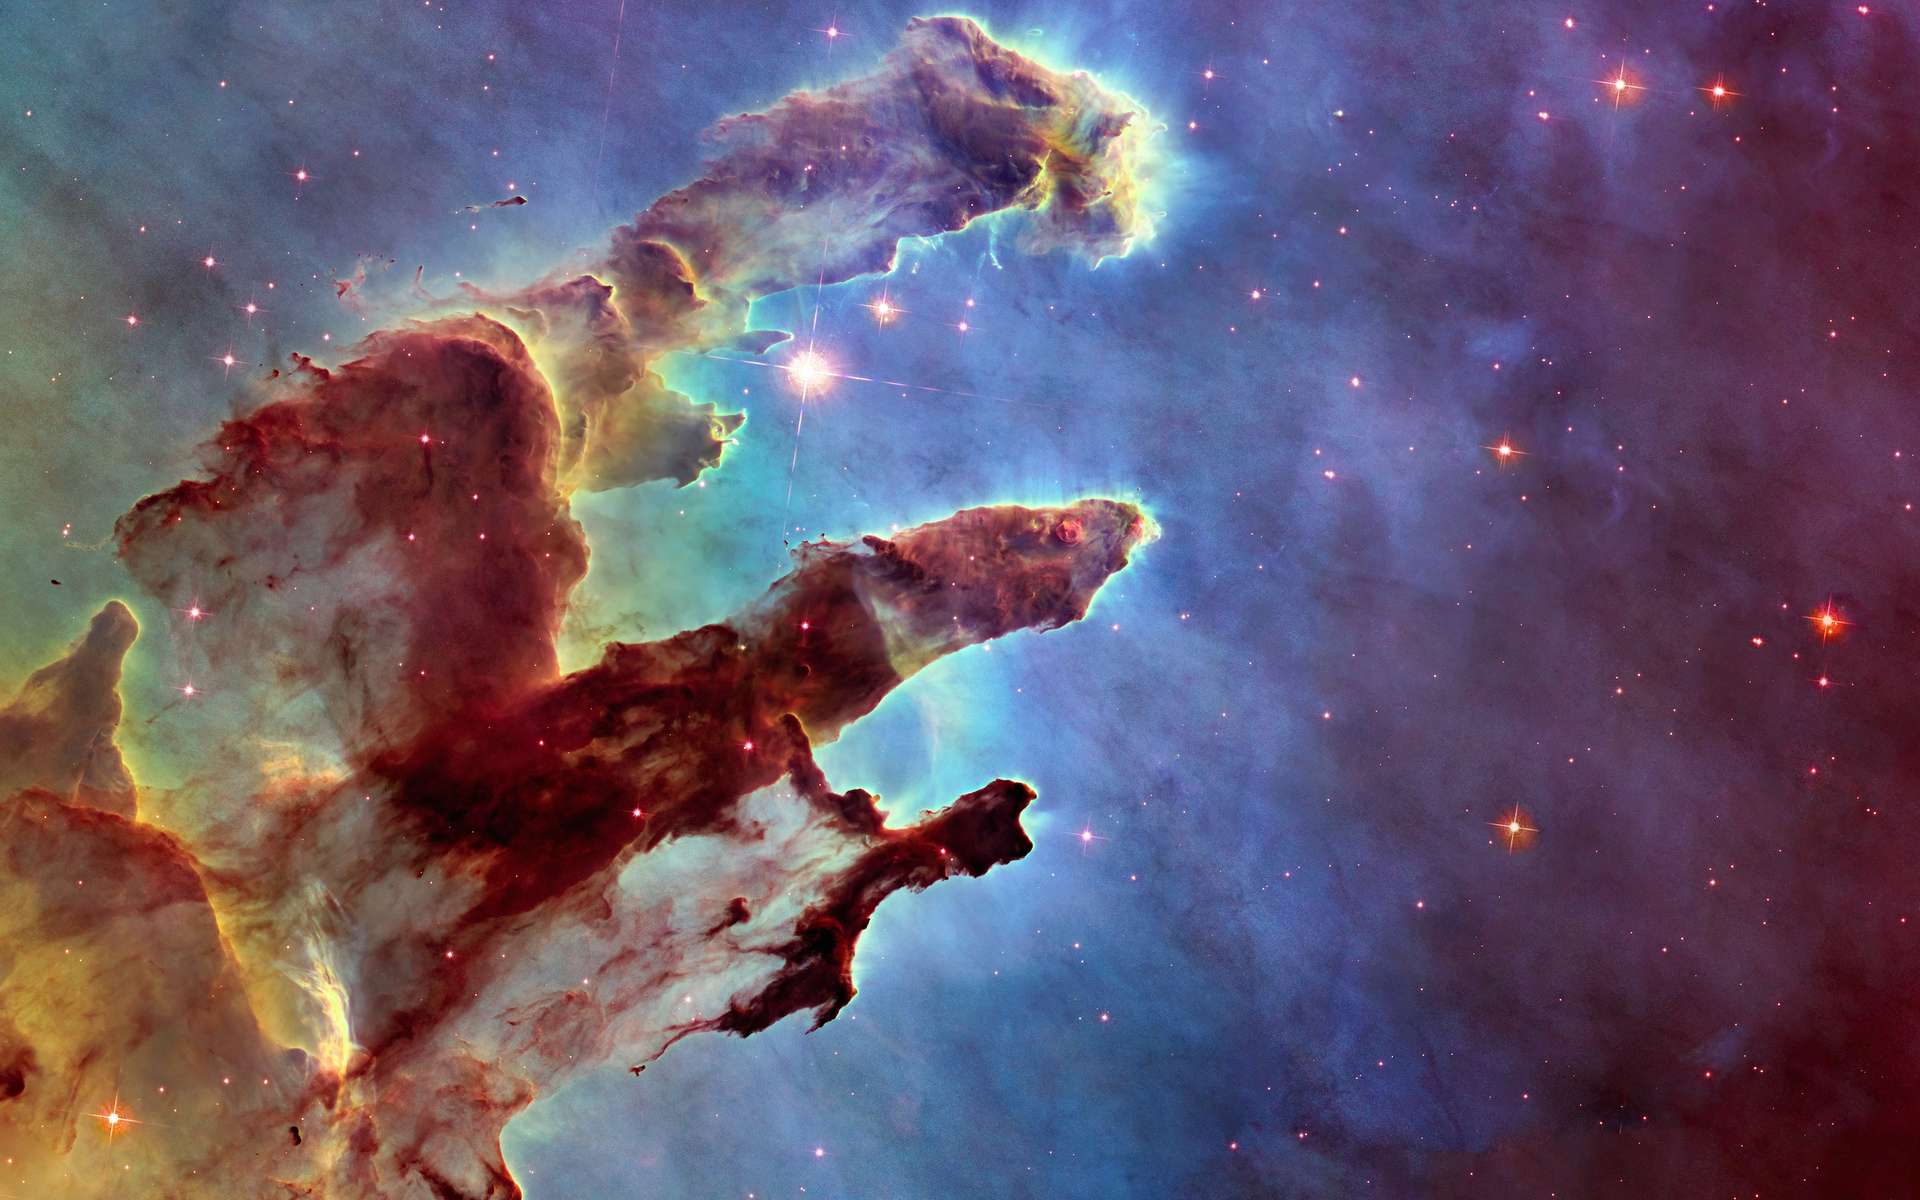 La nébuleuse de l'Aigle (M 16), ou les Piliers de la création, vue par Hubble. © Alexandr Yurtchenko, Adobe Stock